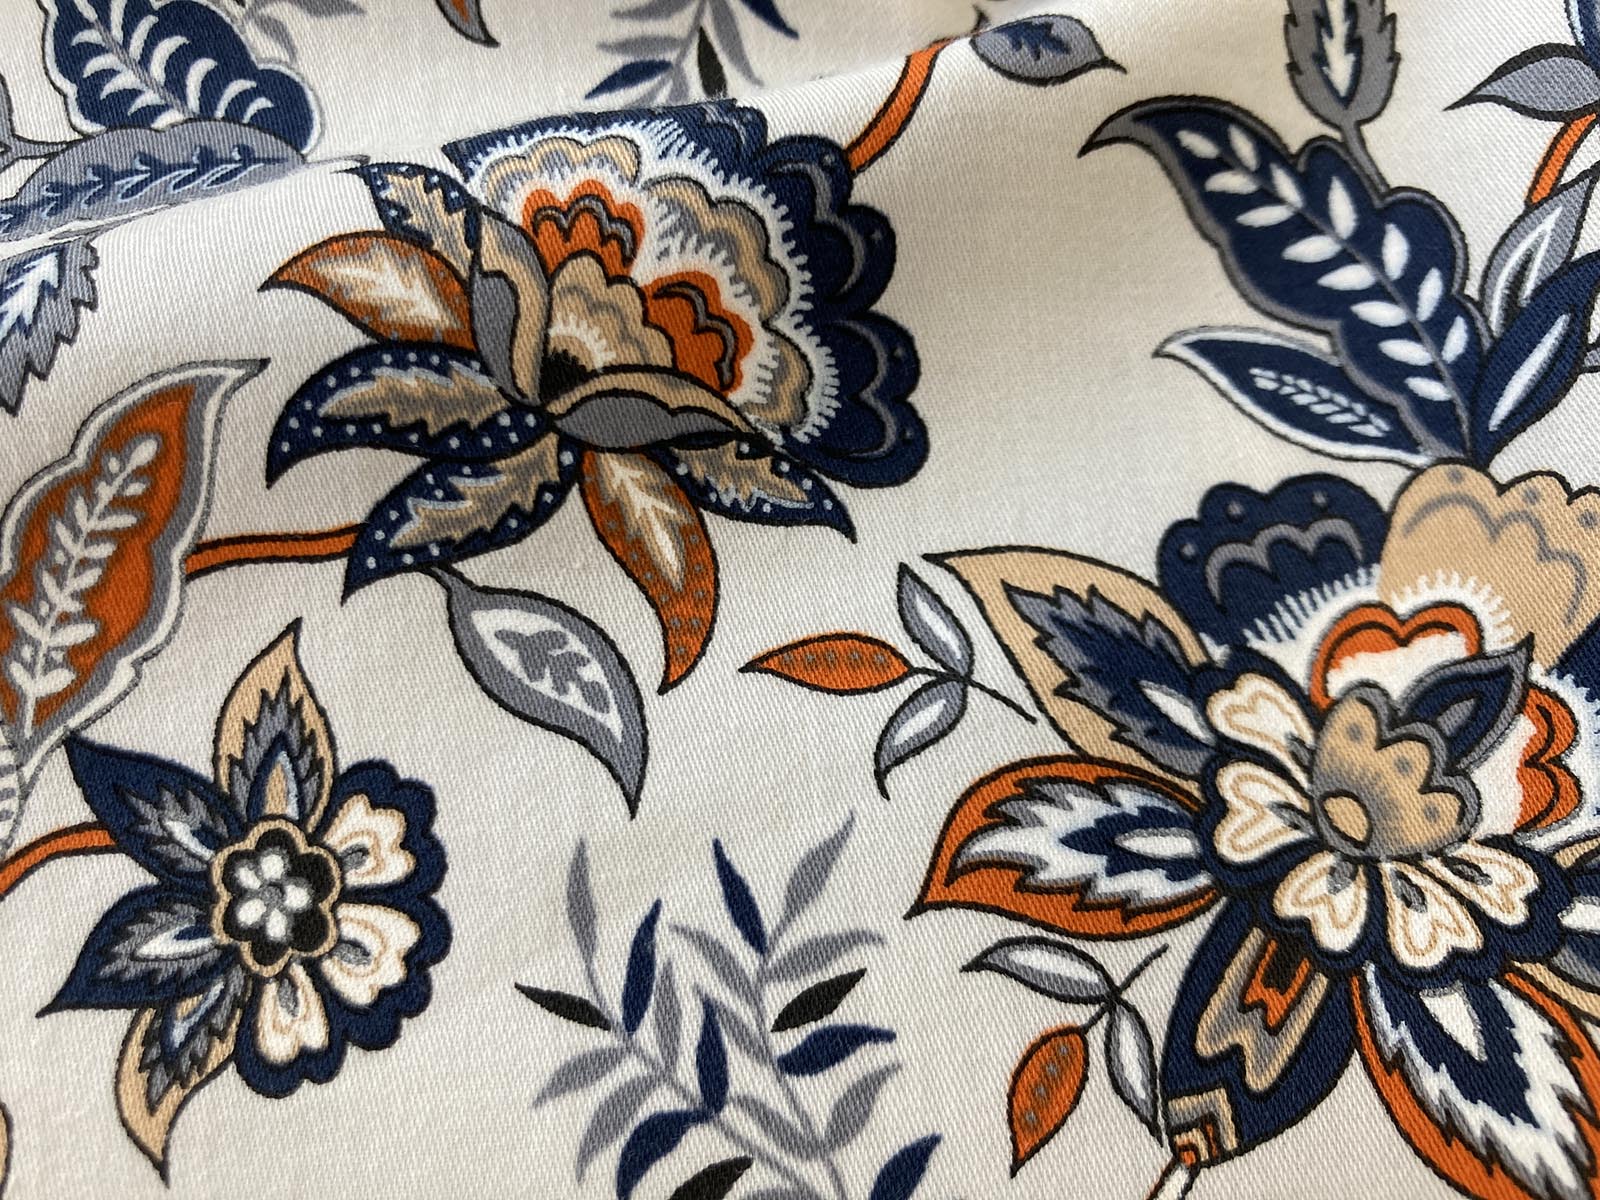 KCP633-62 [ D/#468 ]綿６０サテン広巾多色プリント